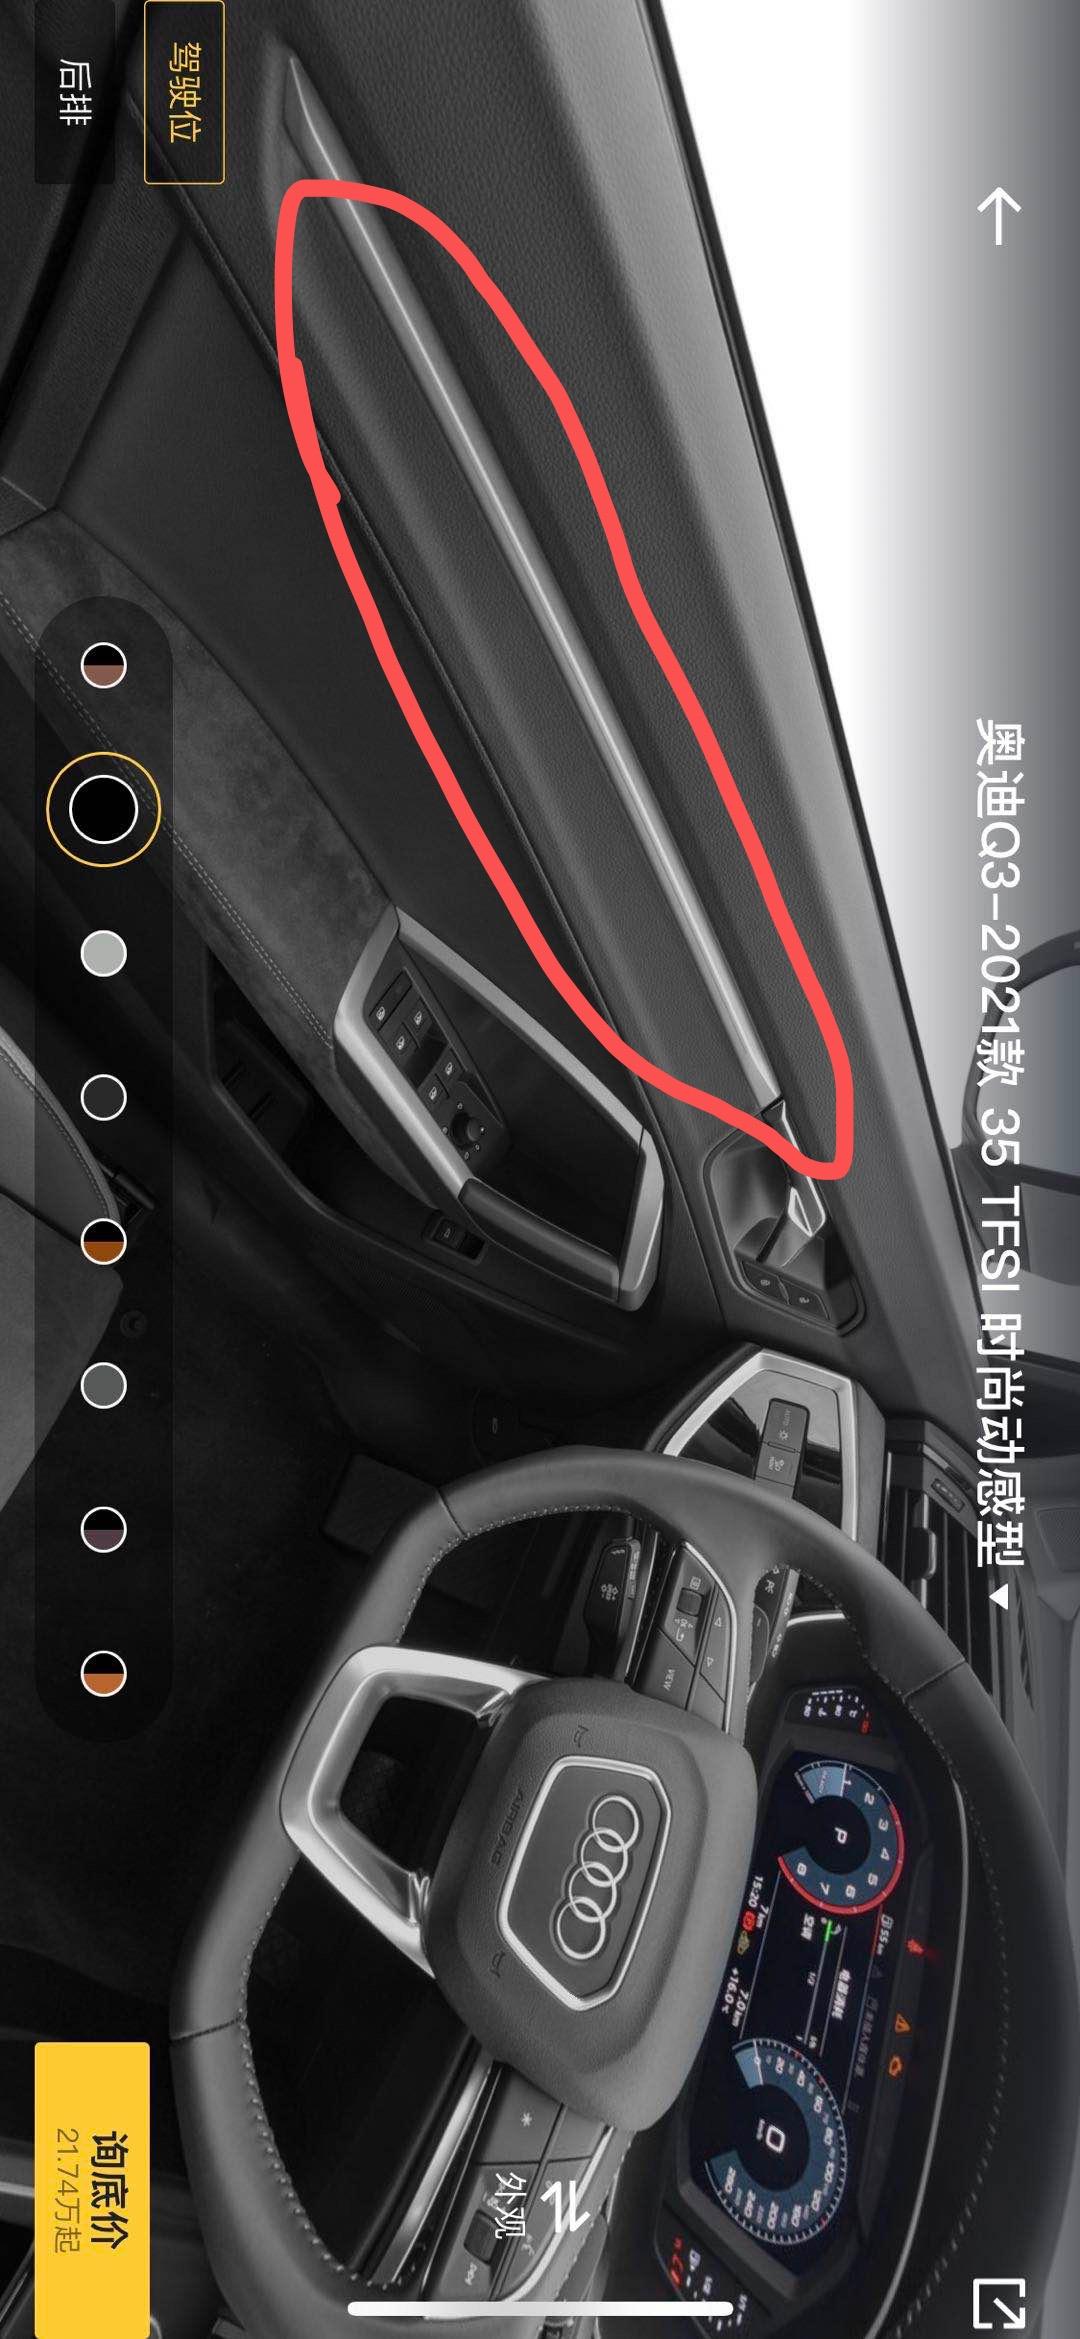 奥迪Q3 1.4T时尚动感 门把手实际车辆没有这个银边吧？还是这个是要选装2500的氛围灯才有